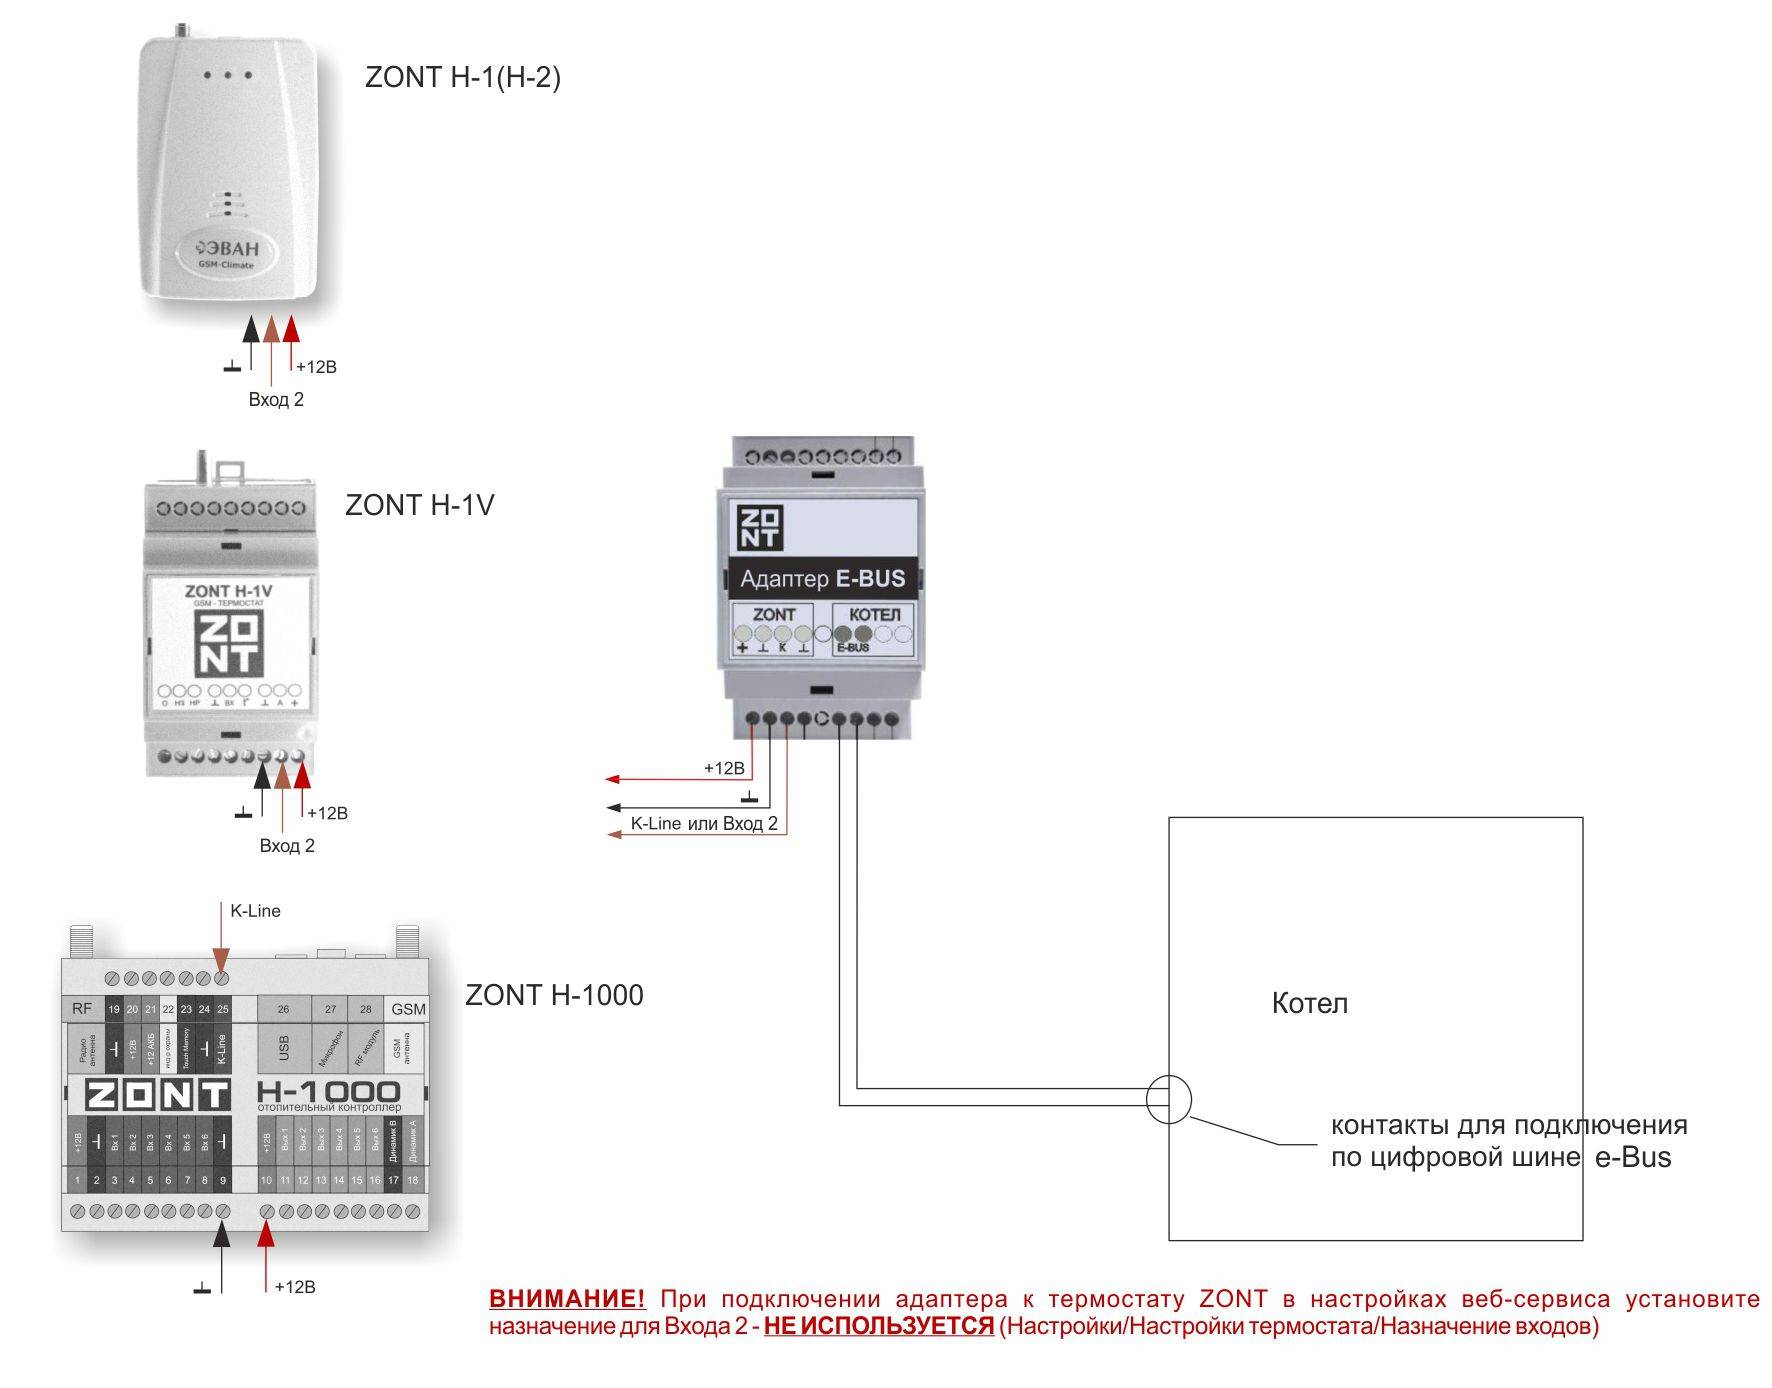 Комнатный терморегулятор для газового котла (термостат)